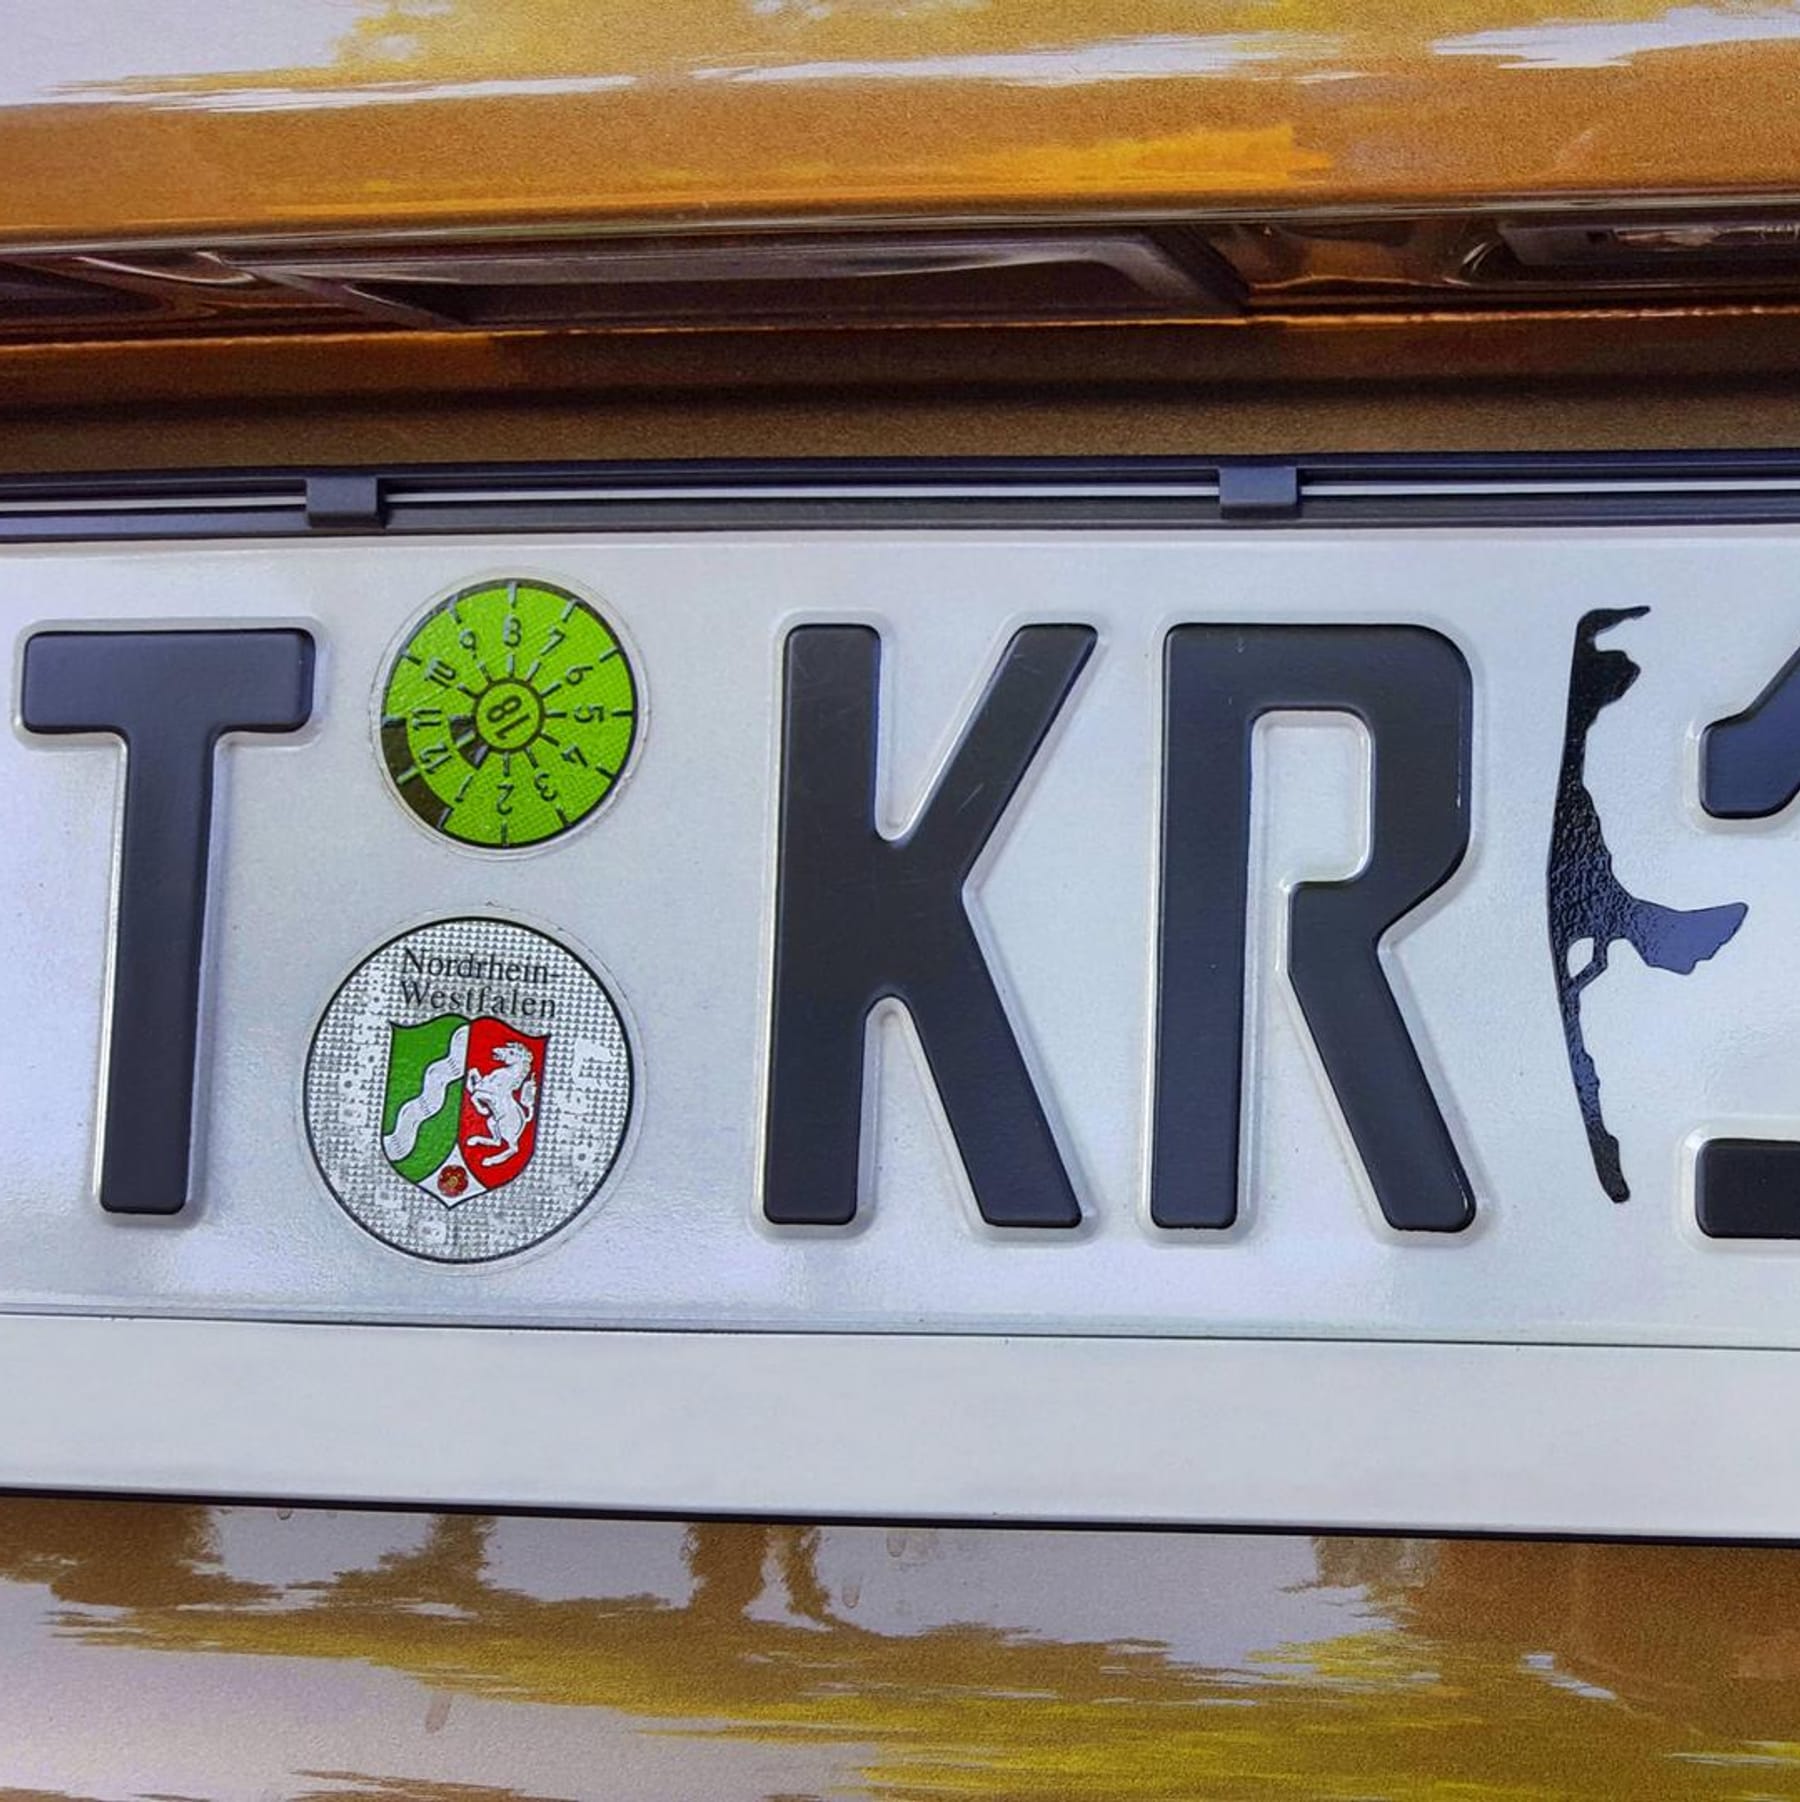 Kennzeichen-Test: Wie gut kennen Sie bayerische Autokennzeichen